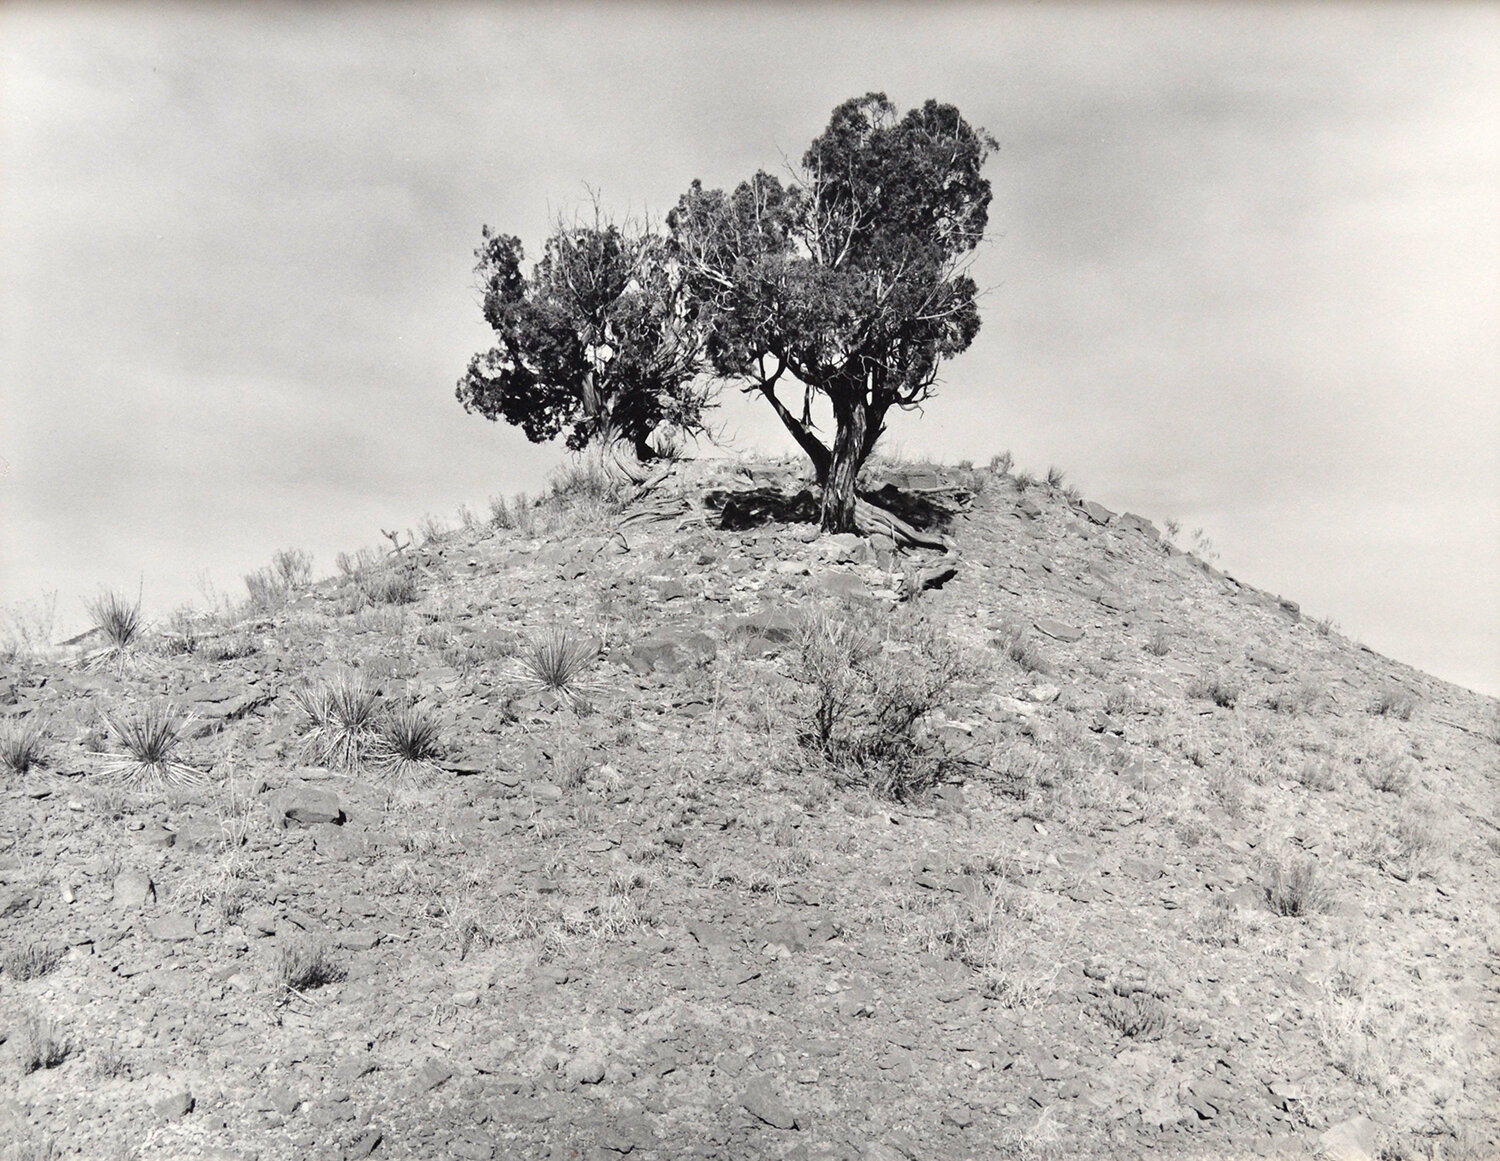 Janet Russek: Two Lone Trees, Painted Desert, 1991